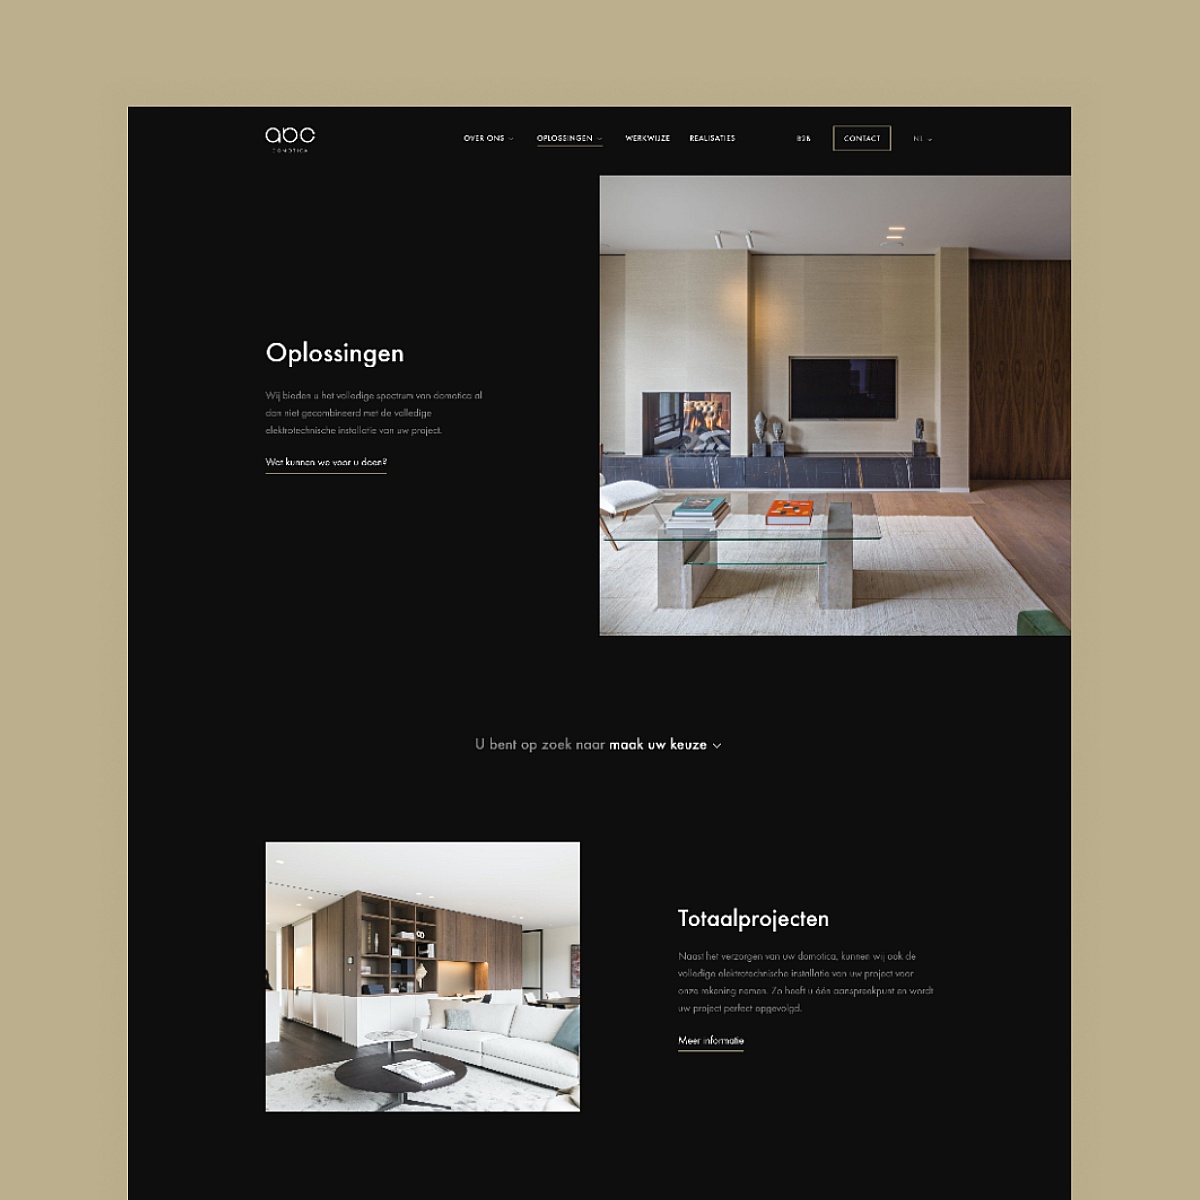 Screenshots van (details van) de website die ABC - Domotica liet maken door Heave Webdesign Antwerpen